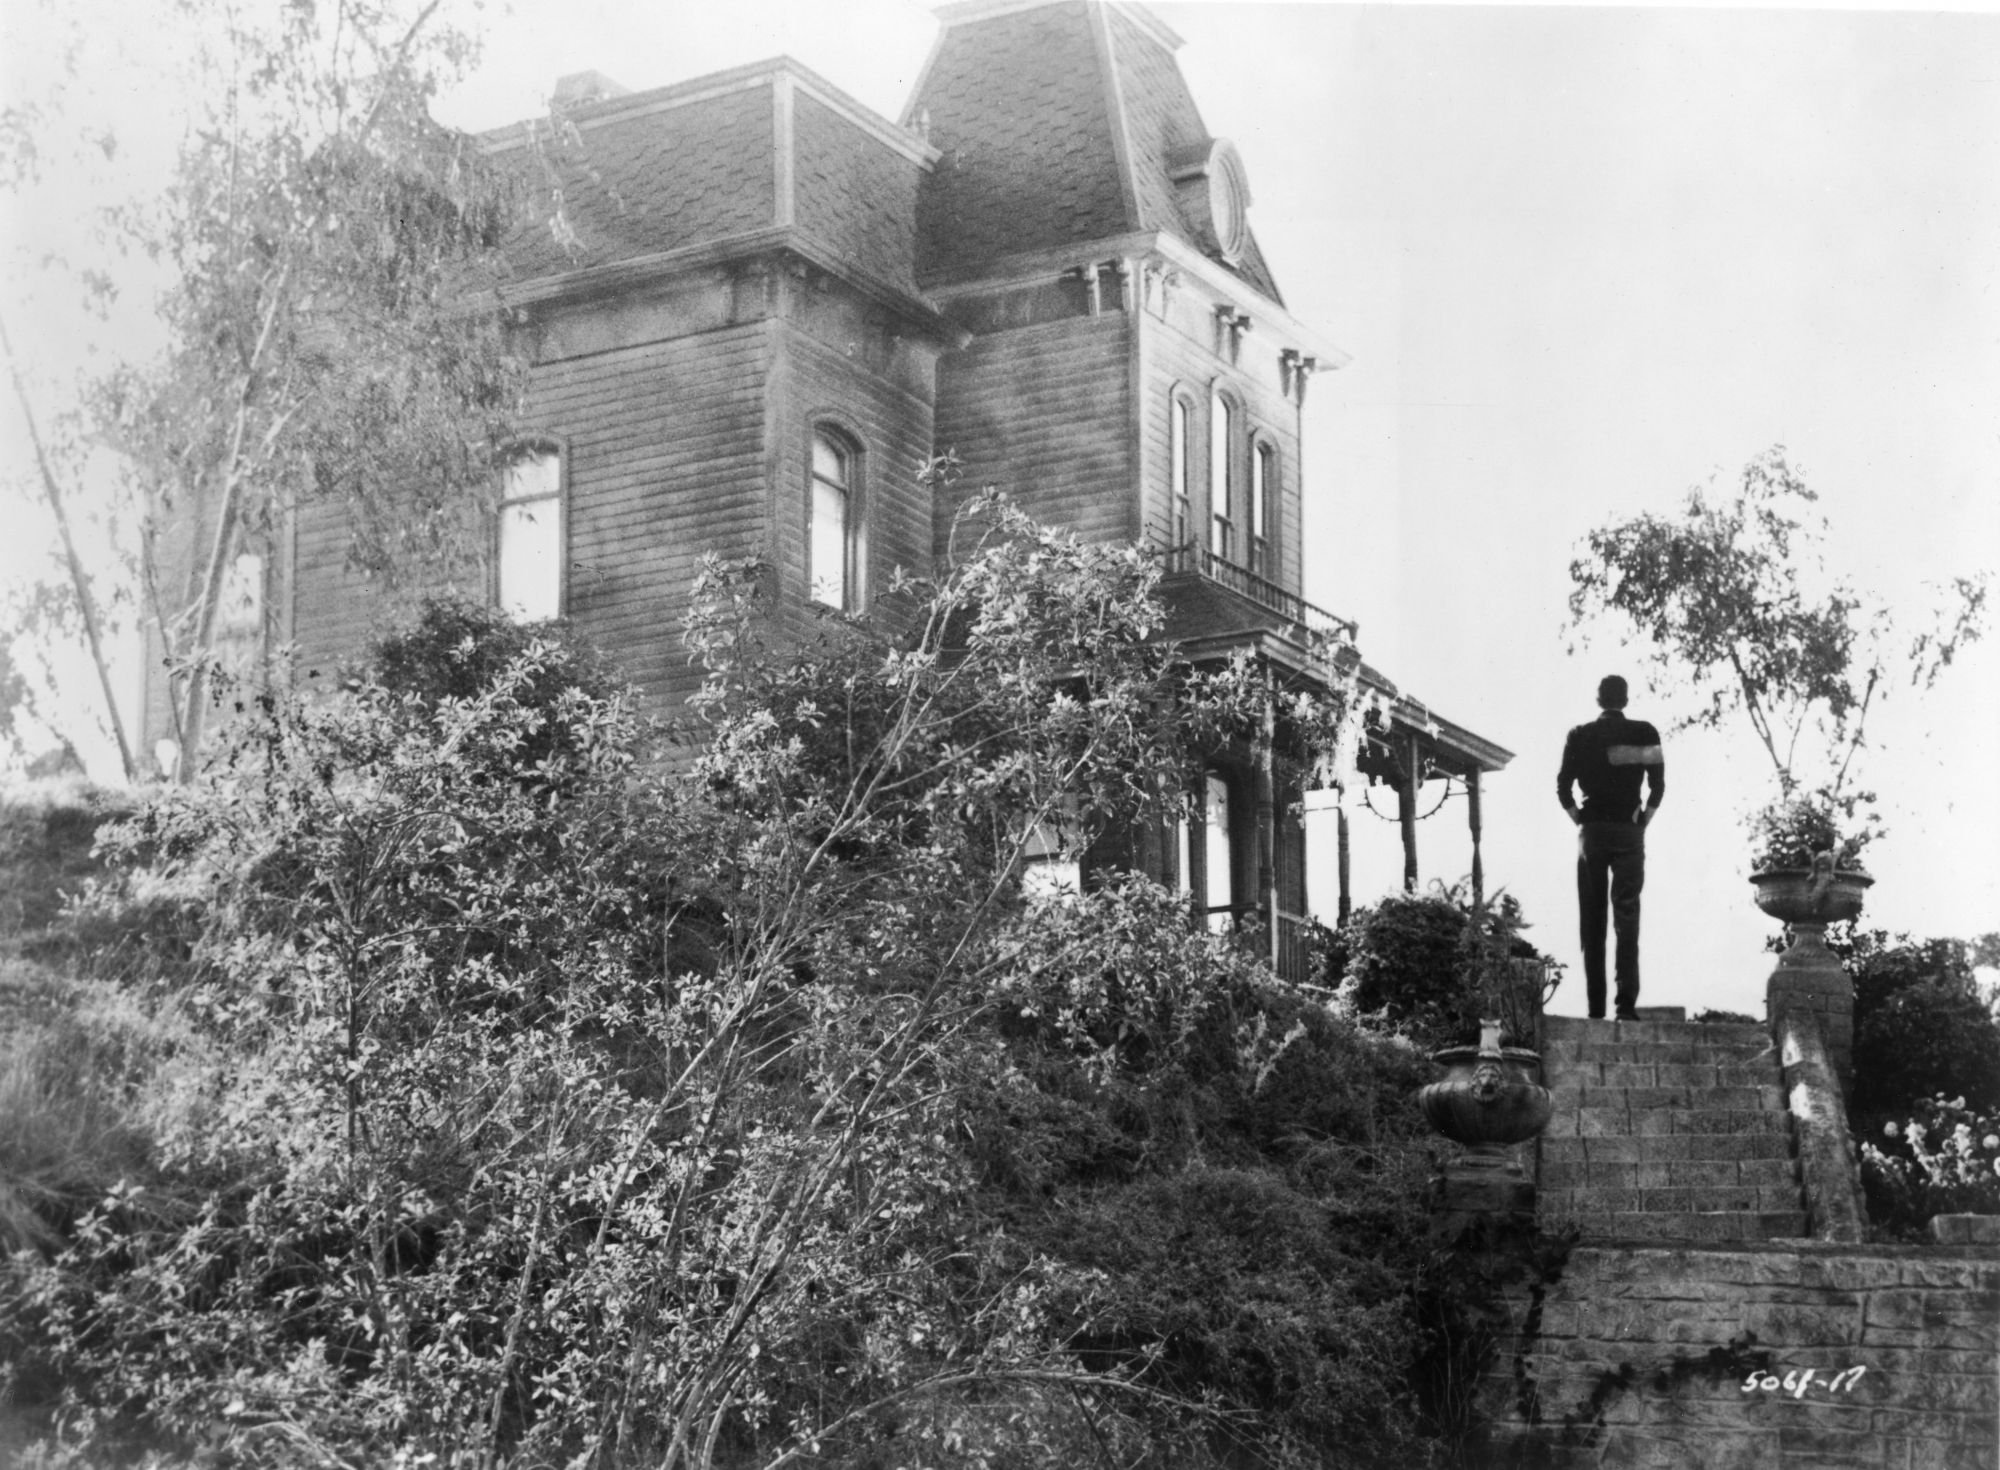 Le célèbre manoir d'Anthony Perkins dans Psychose d'Alfred Hitchcock